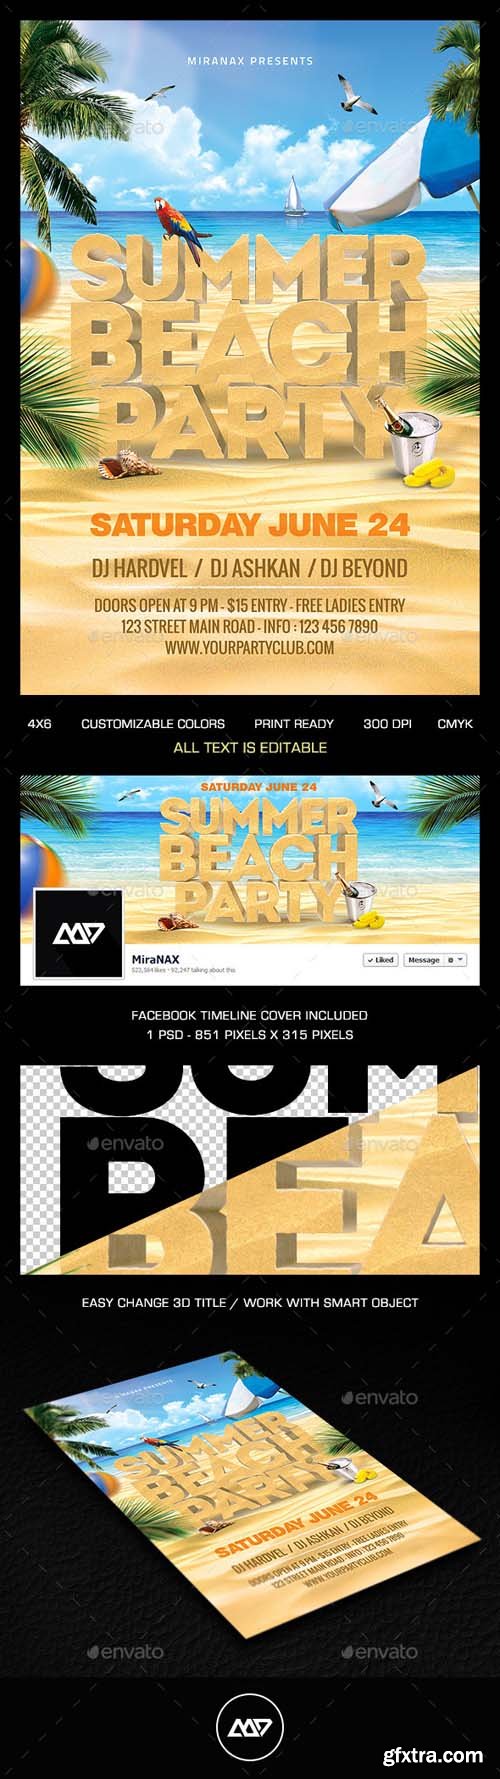 GR - Summer Beach Party Flyer PSD Template 11170748